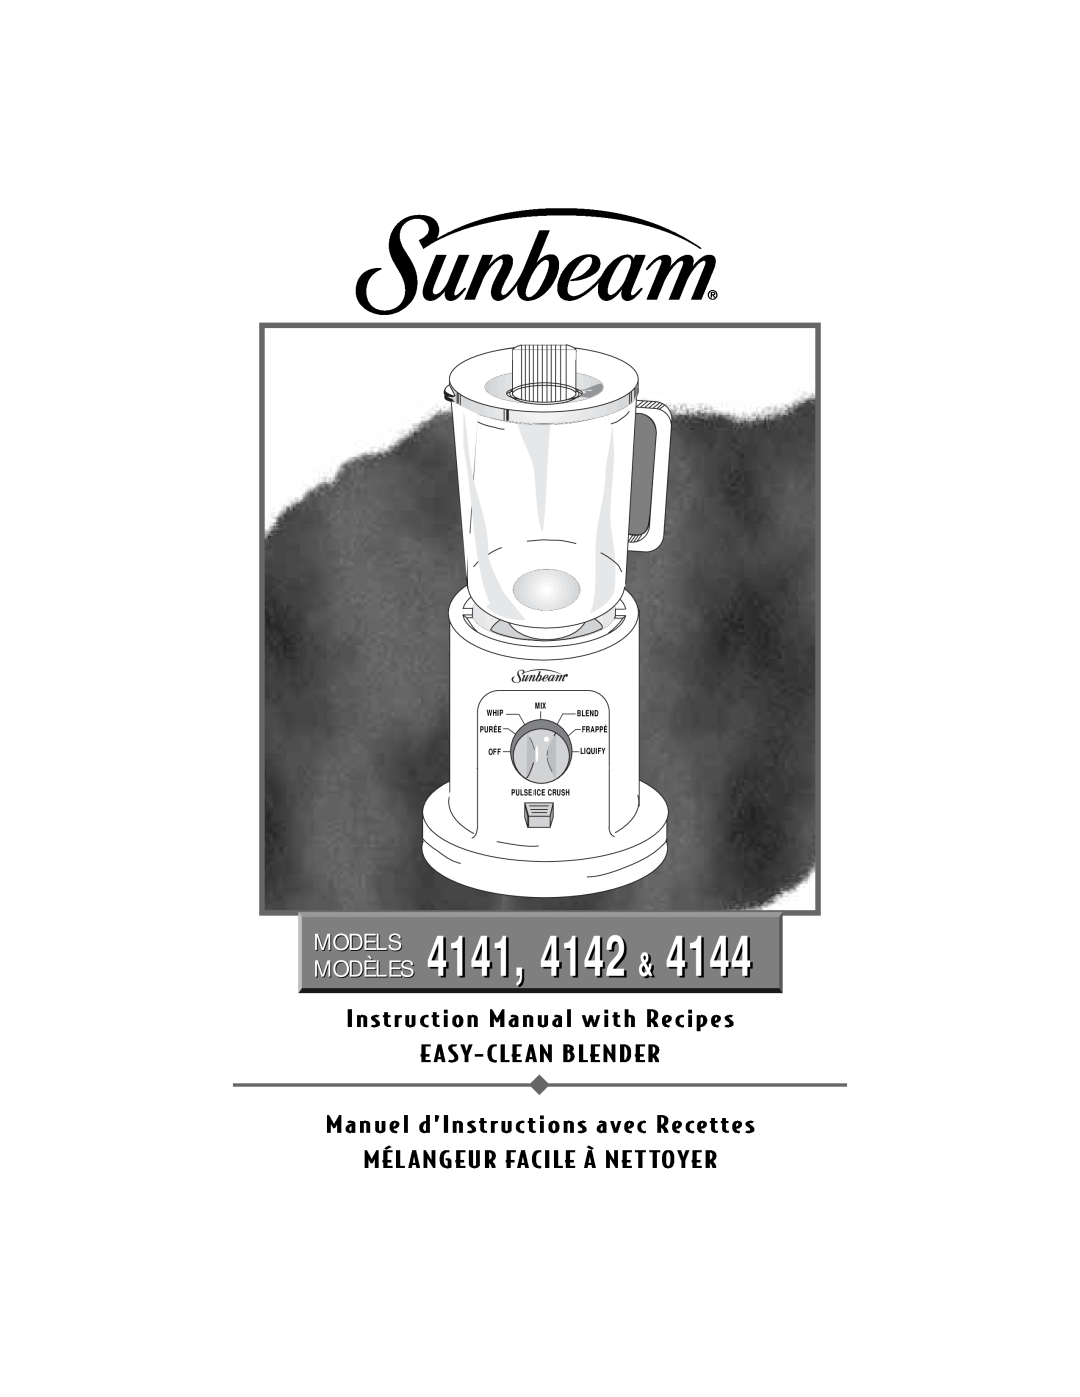 Sunbeam 4141 instruction manual E Asy- Cle An Blender, Manuel dÕInstructions avec Recettes, Models Modèles, Purée, Liquify 